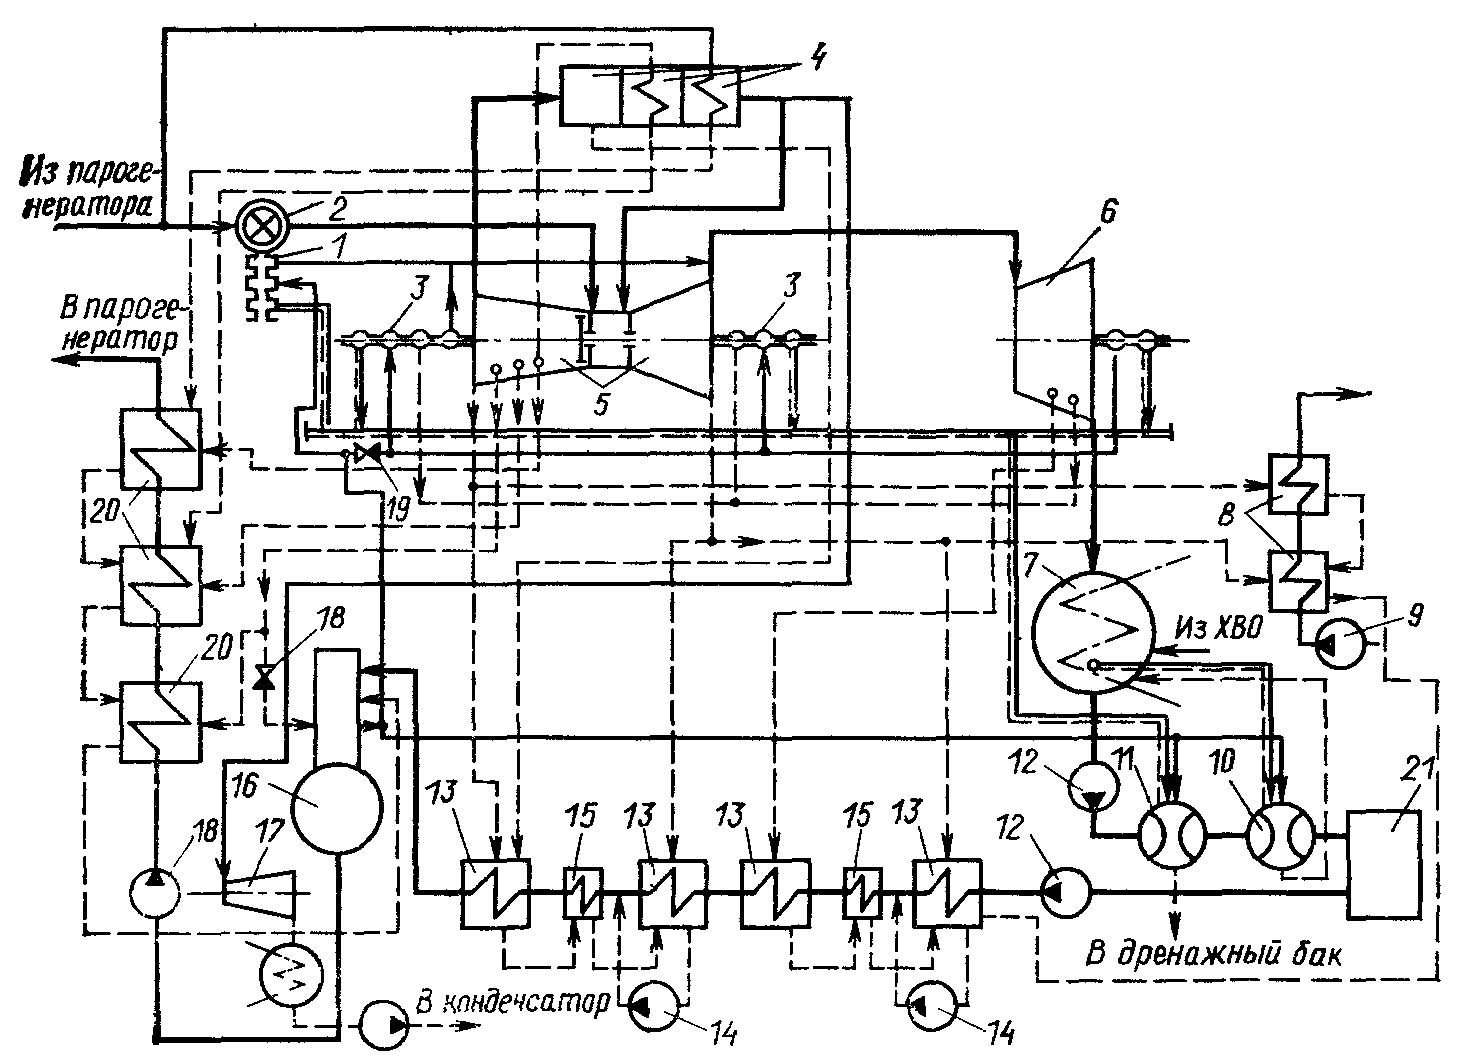 тепловая схема турбоустановки К-500-60/1500 двухконтурной АЭС с ВВЭР-1000